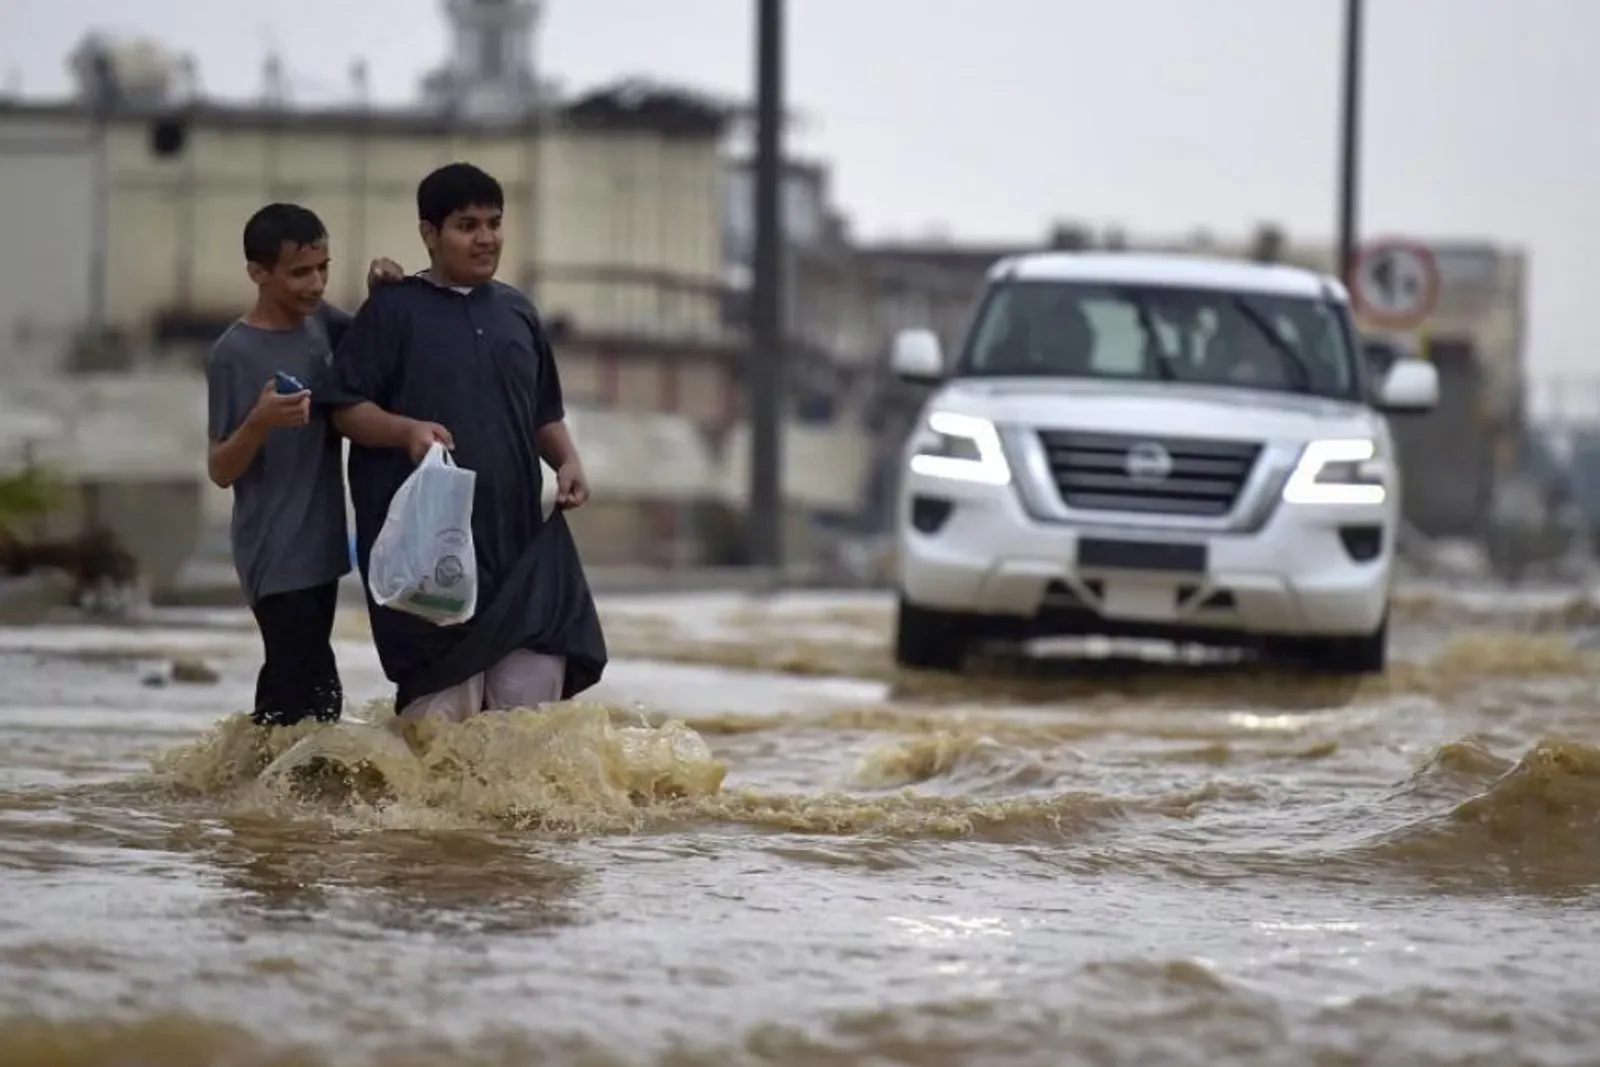 Akibat Banjir, Viral Gurun di Arab Menghijau! Ini Faktanya